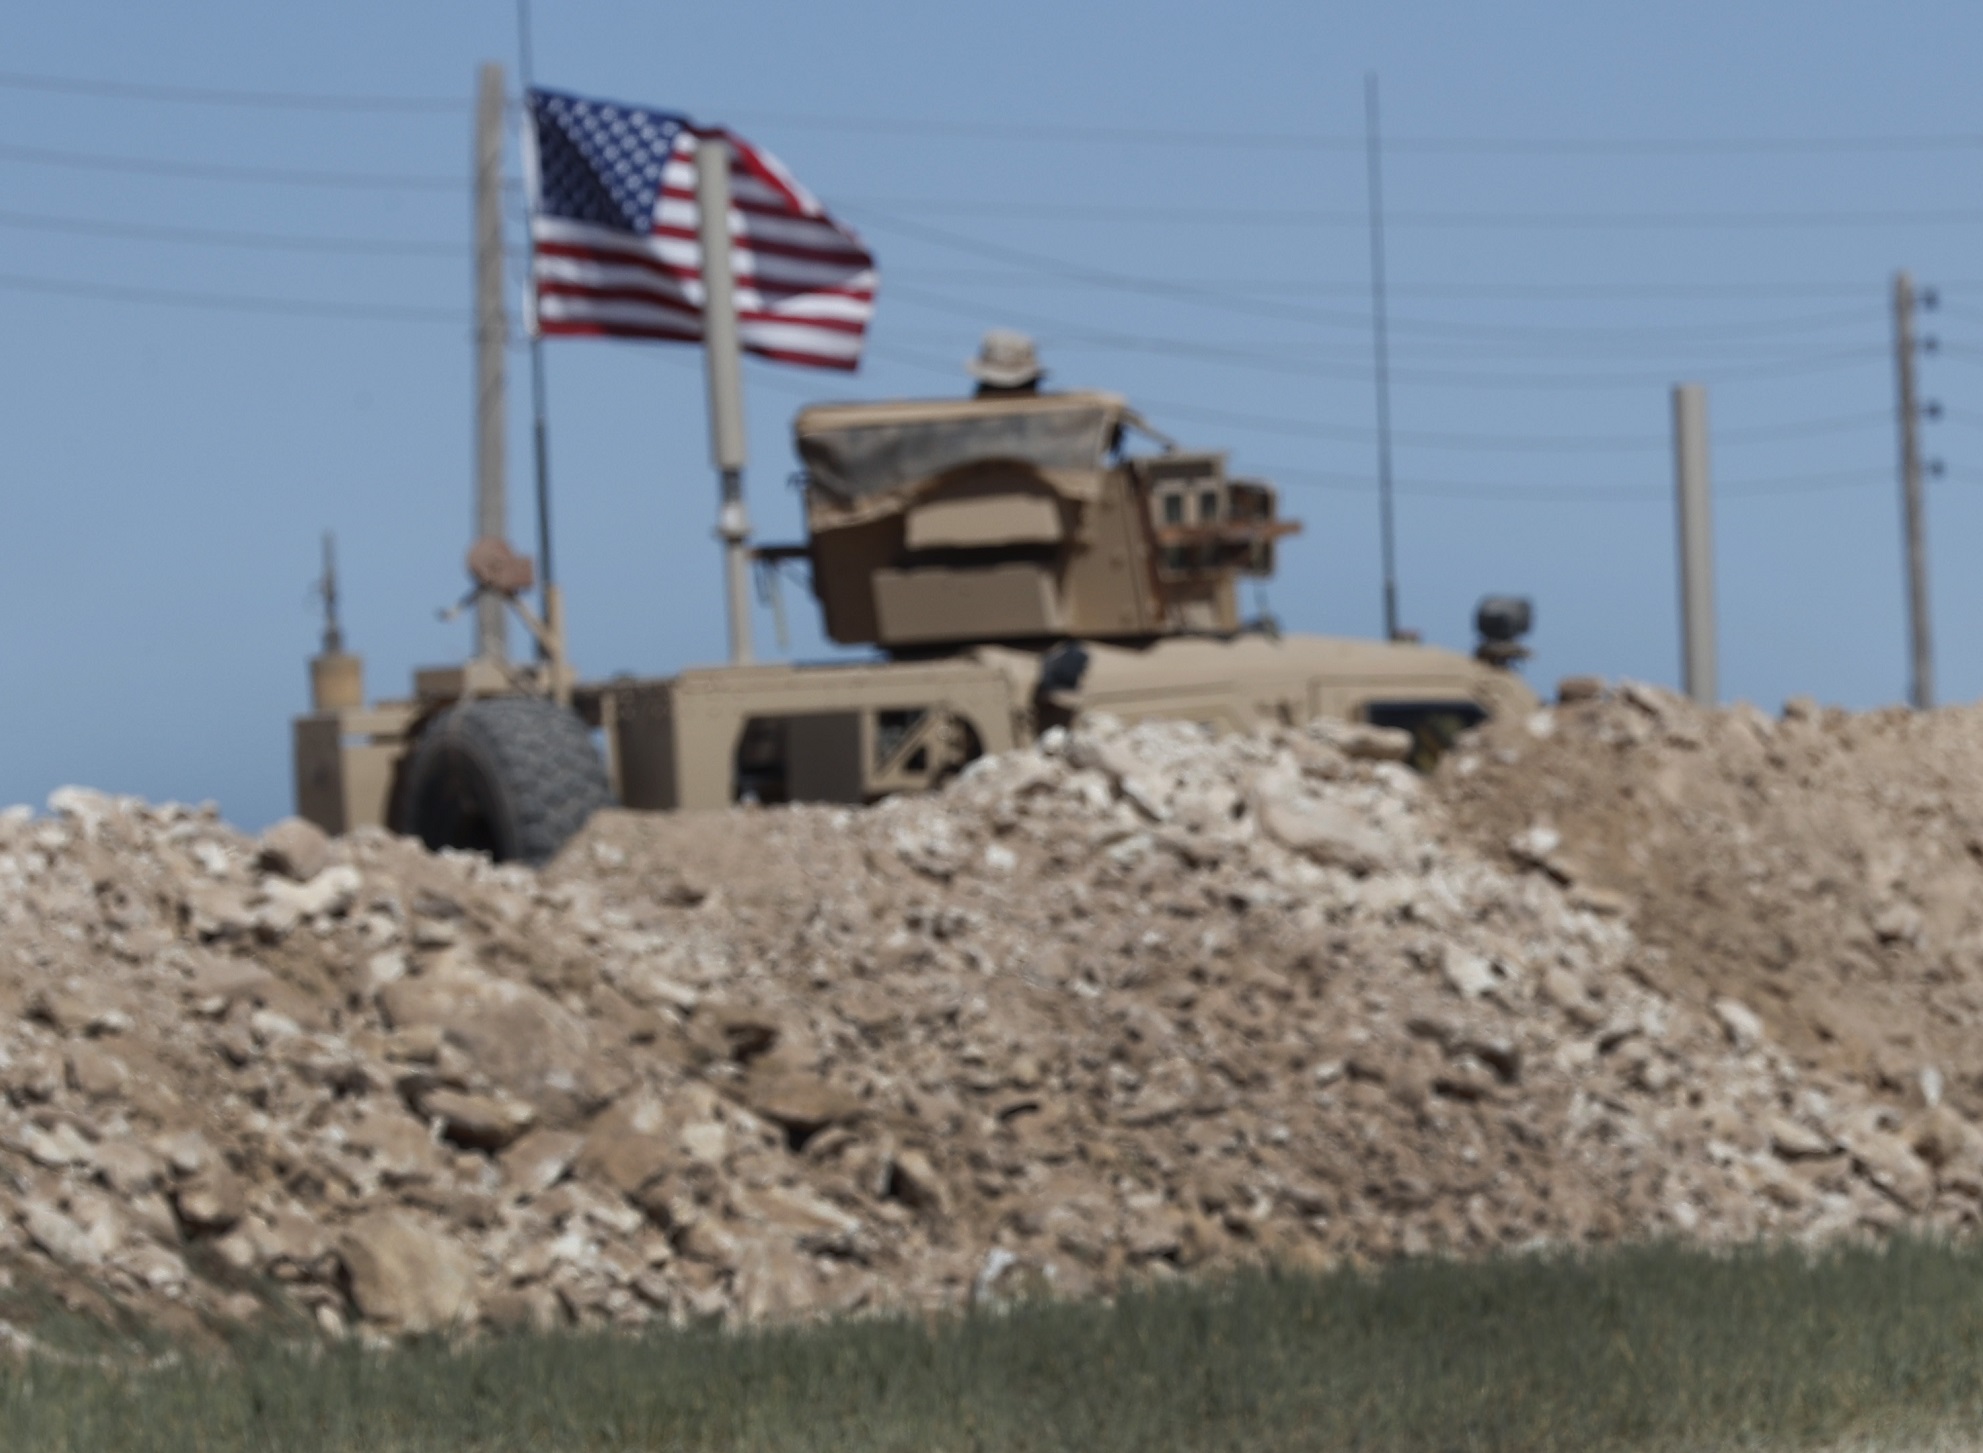 Οι ΗΠΑ έπληξαν εγκατάσταση συνδεόμενη με το Ιράν στη Συρία – Αντίποινα για τις επιθέσεις κατά αμερικανικού προσωπικού σε Συρία και Ιράκ